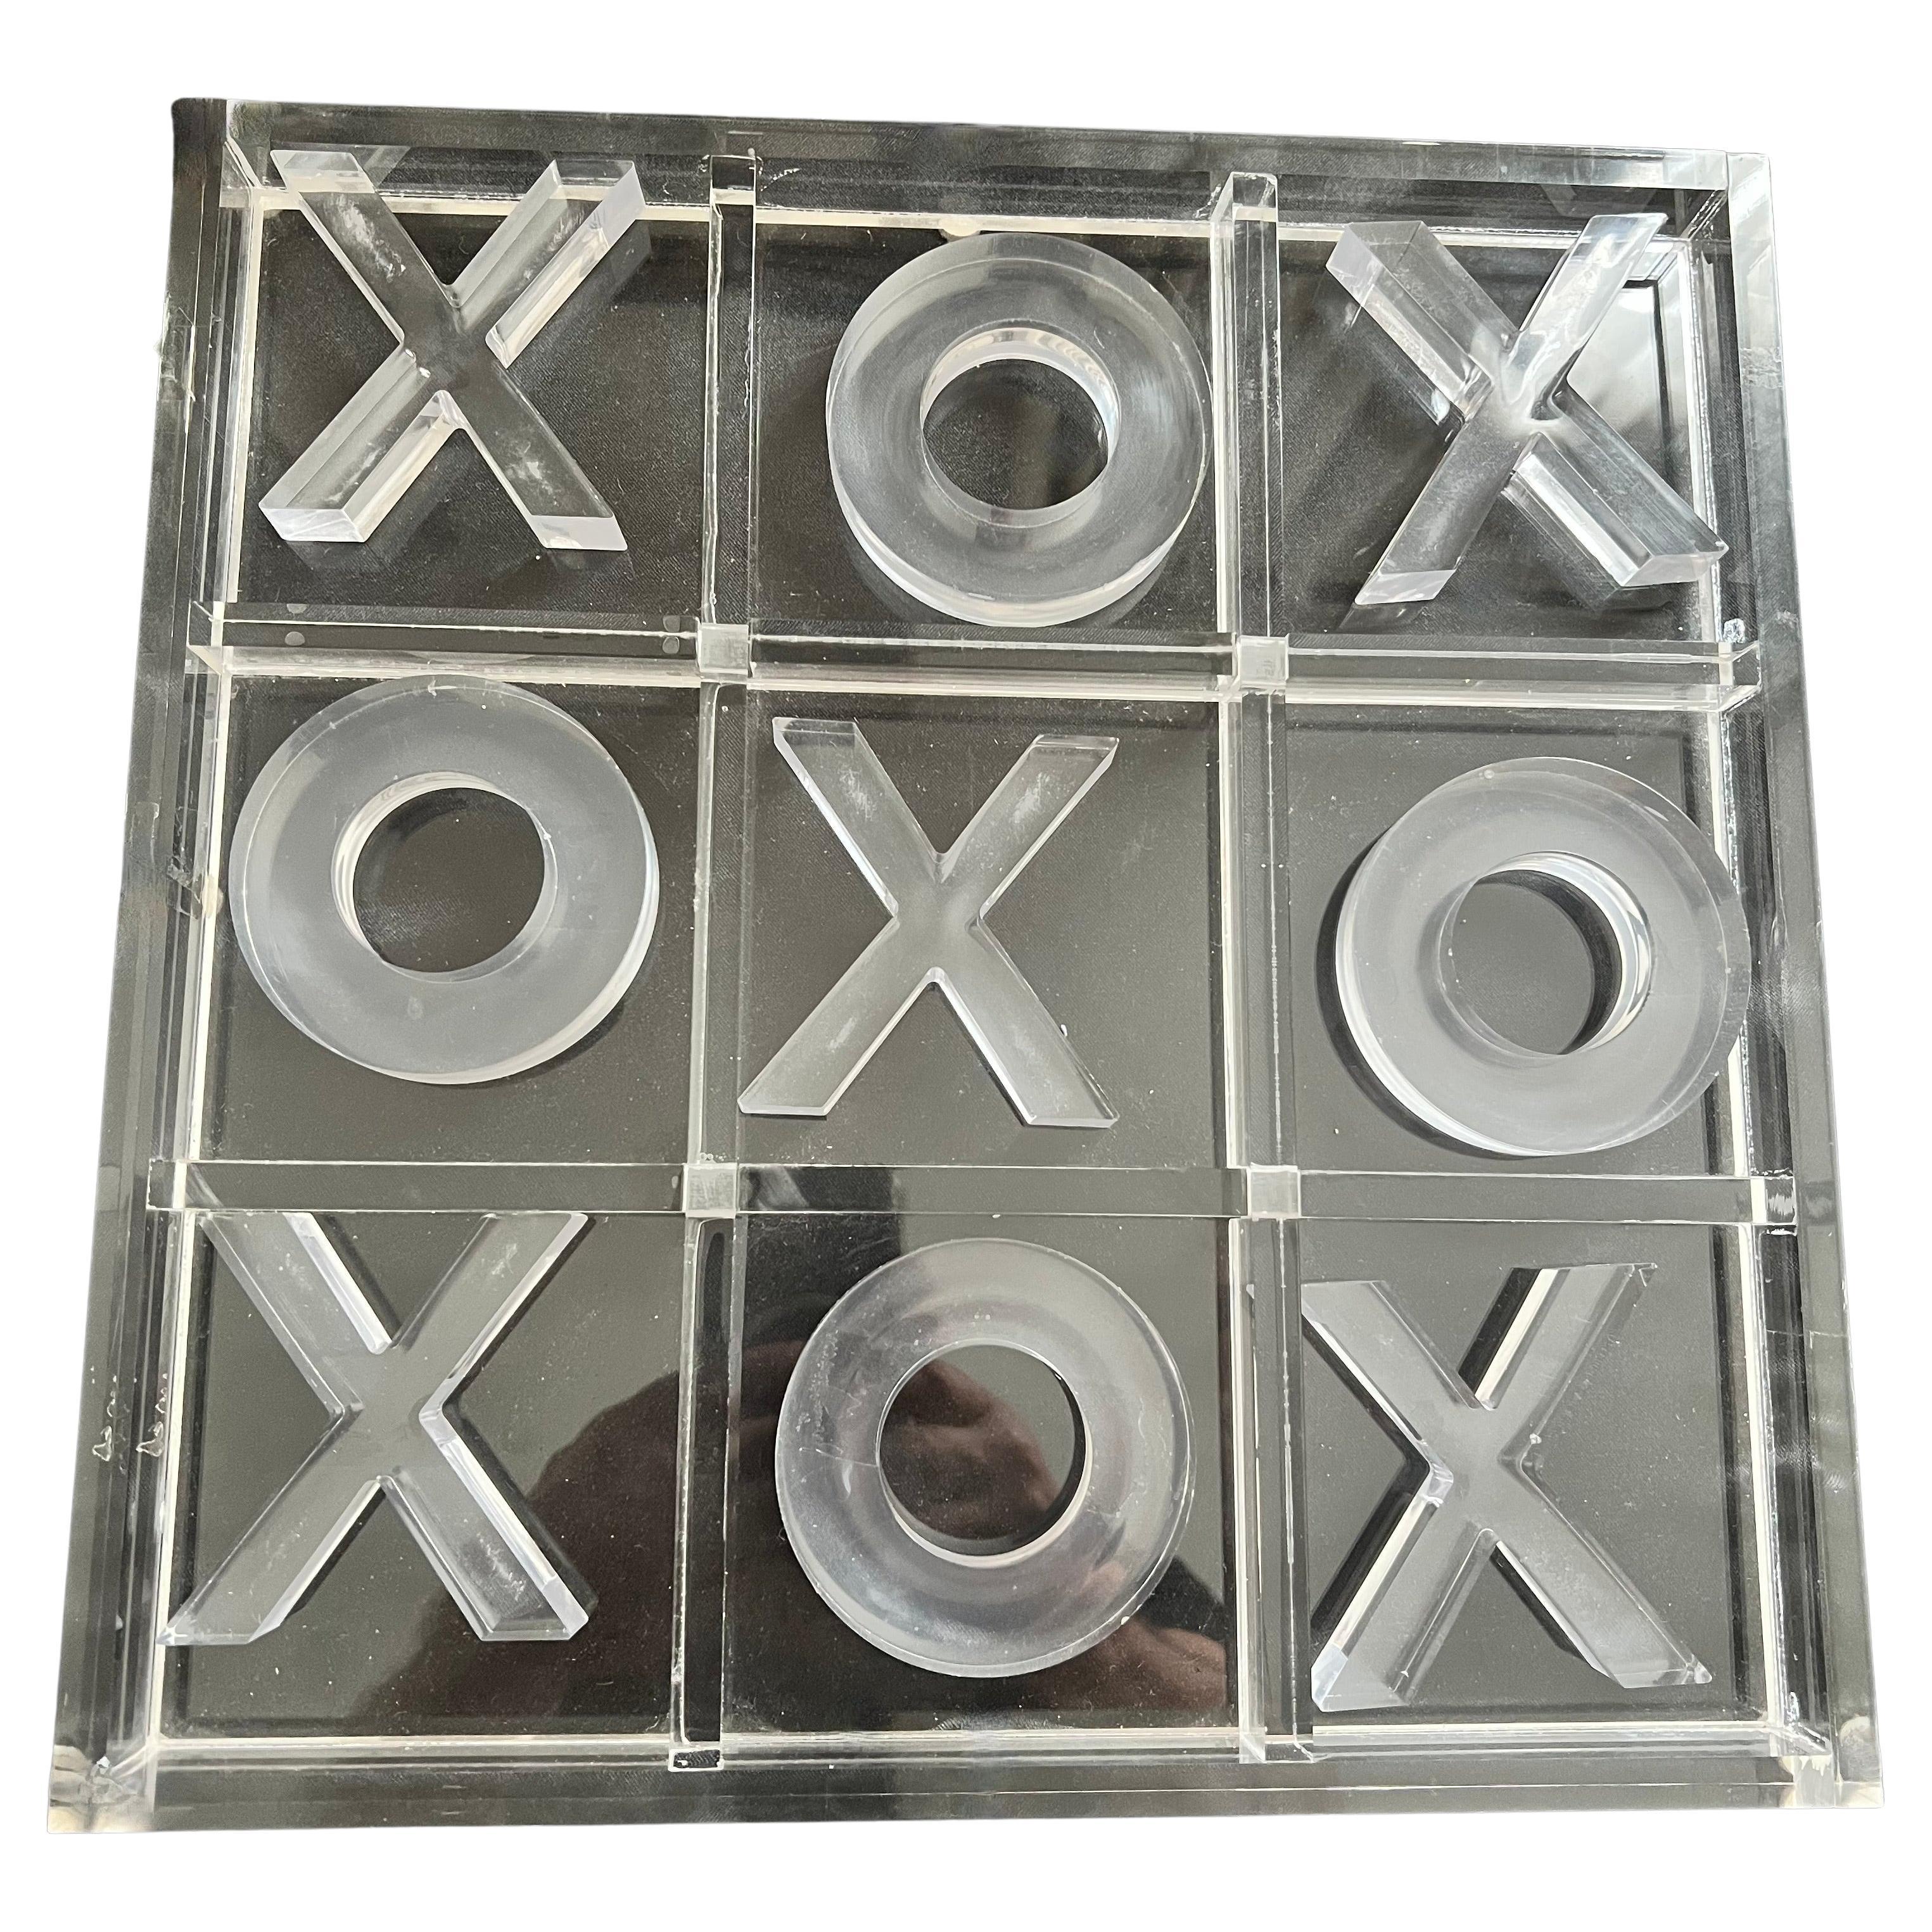 Tableau de Tic Tac Toe entièrement en acrylique.   Le tableau et tous les X et O sont en acrylique.  Le tableau et les pièces peuvent être aussi décoratifs que pratiques - ils s'intègrent à de nombreux espaces et en particulier à une chambre